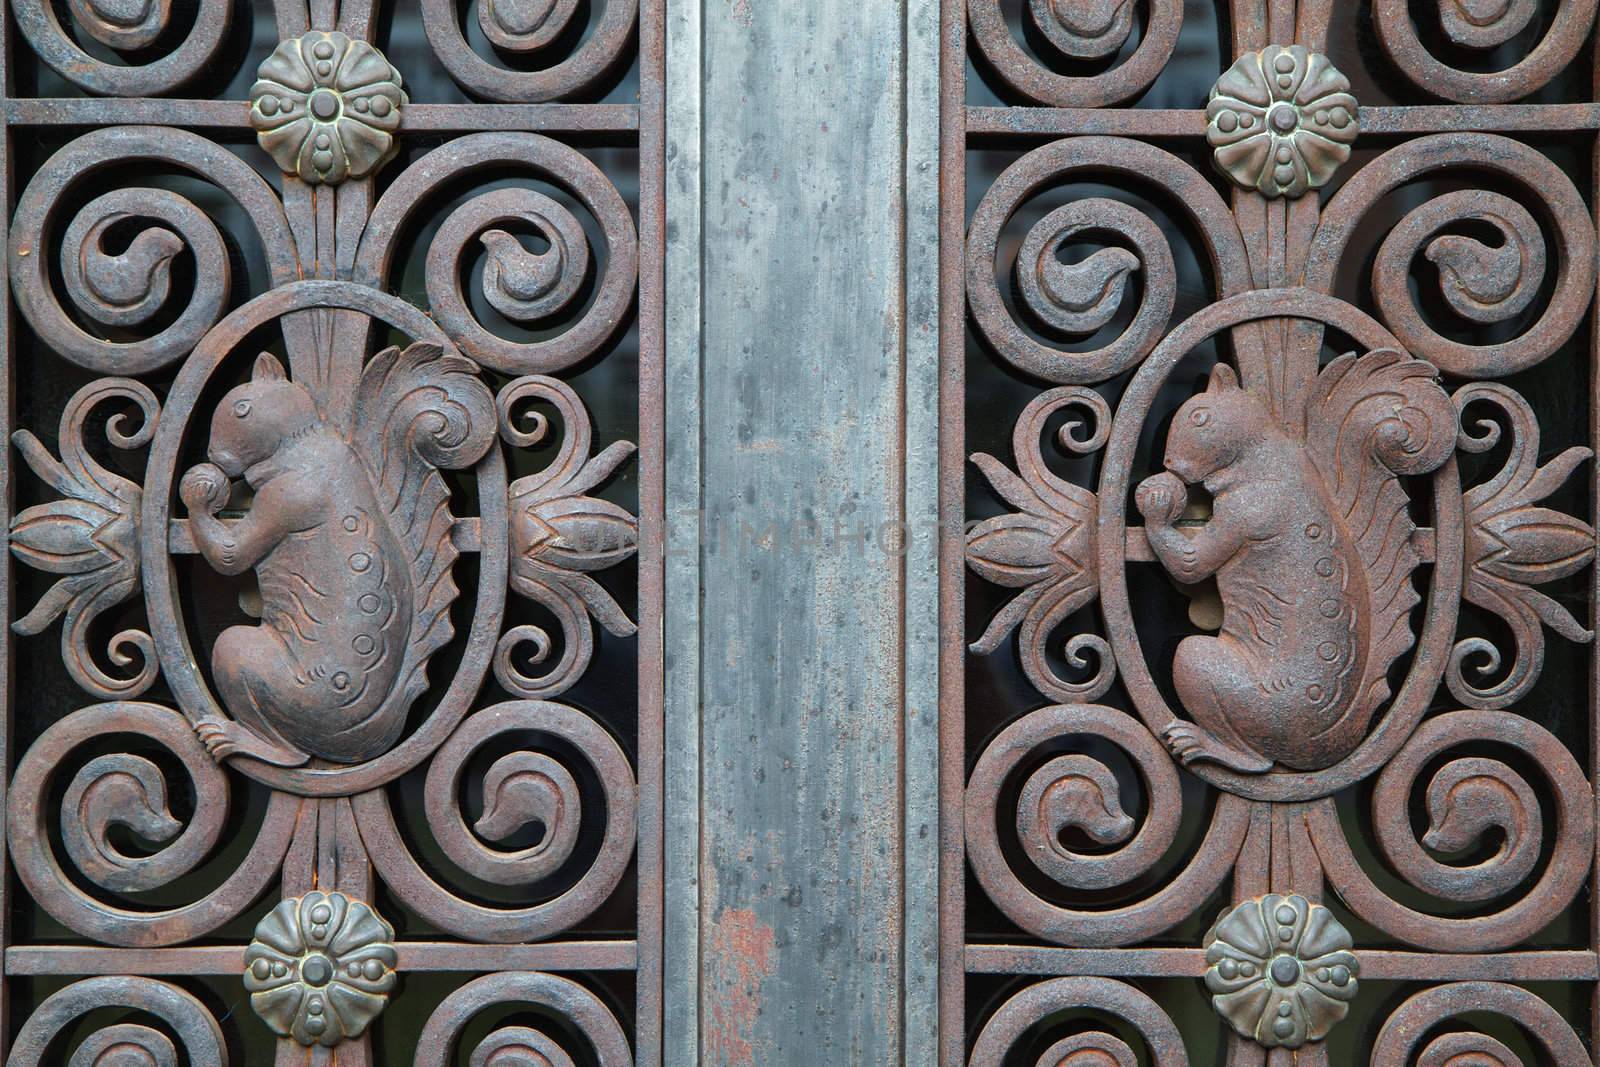 Iron door squirrels by bobkeenan